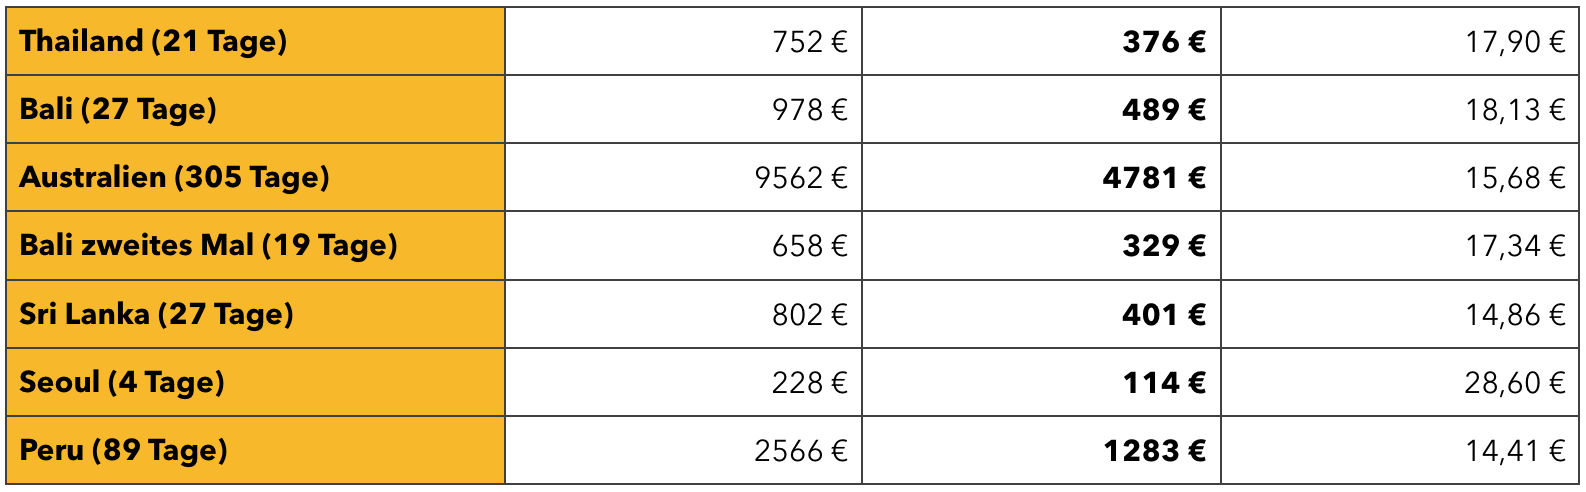 Tabelle mit unseren Reisekosten in den einzelnen Ländern Thailand, Bali, Australien, Sri Lanka und Peru